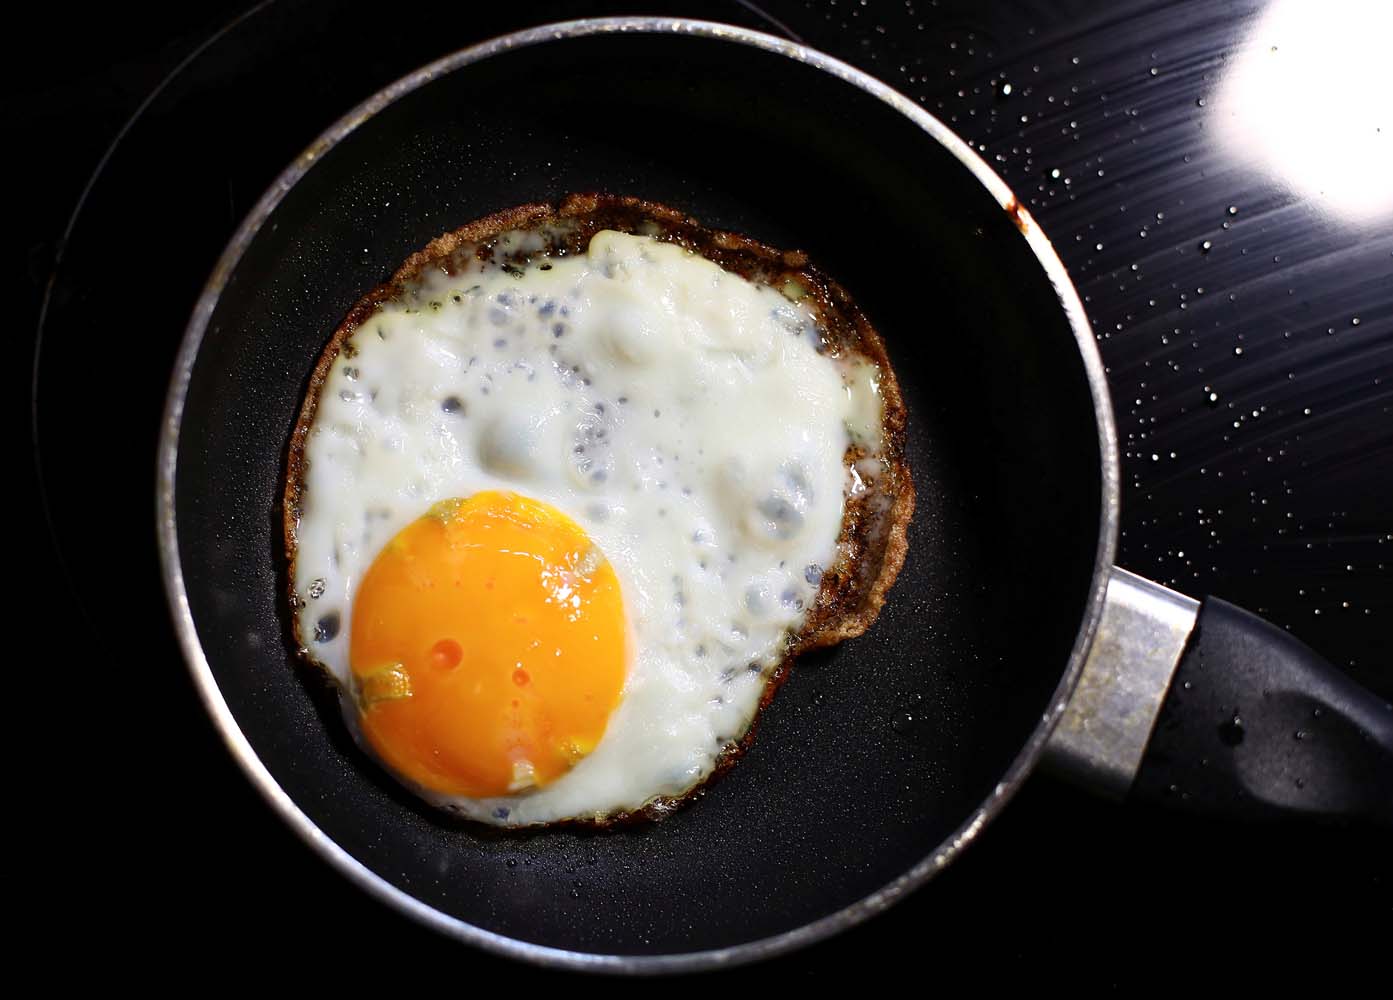 Un huevo con mantequilla… lo que comerás diariamente por un mes con el nuevo “Cestaticket Socialista”